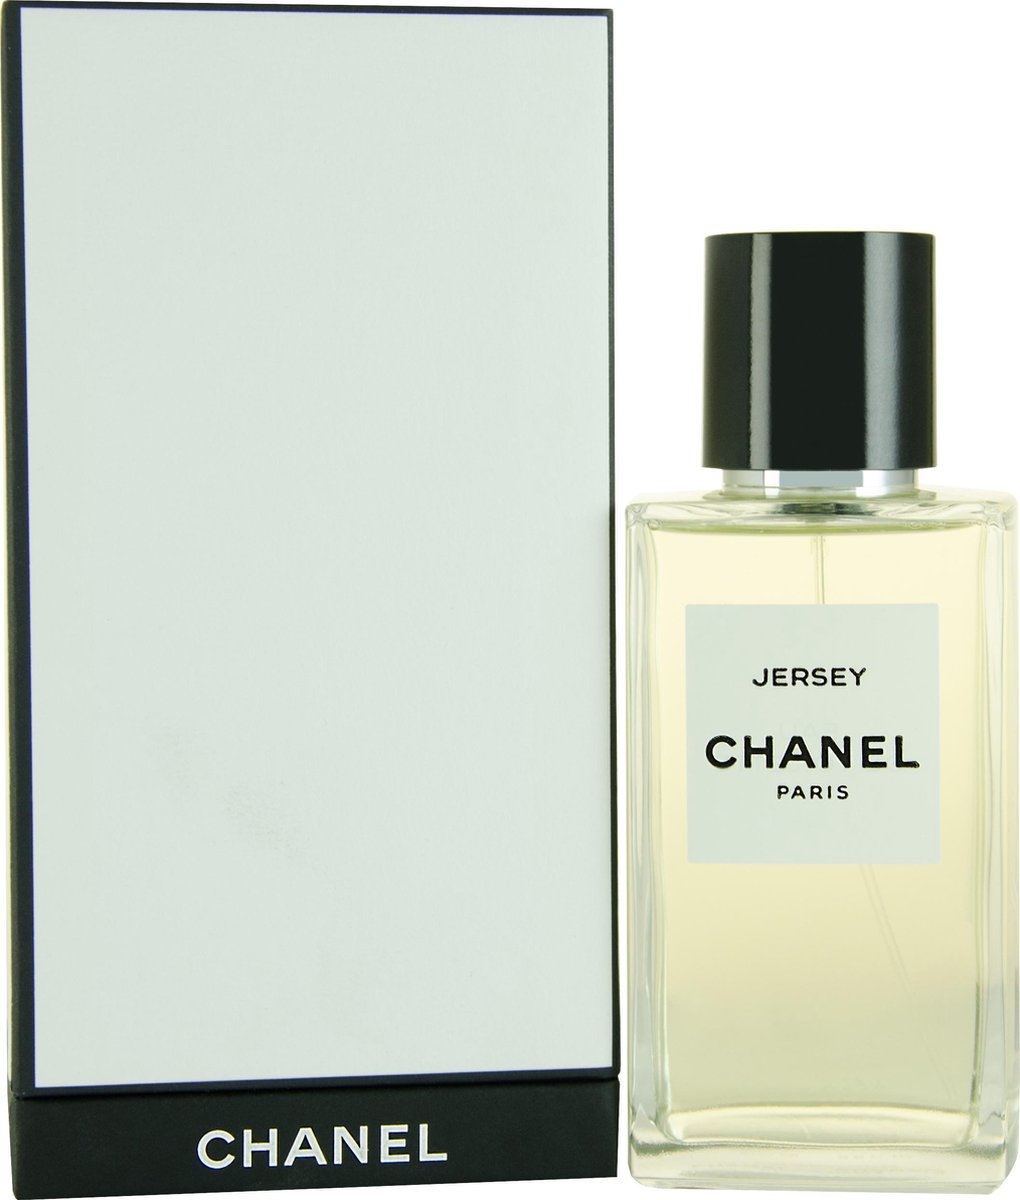 Chanel Jersey Les Exclusifs de Chanel 200 ml - Damesgeur | bol.com